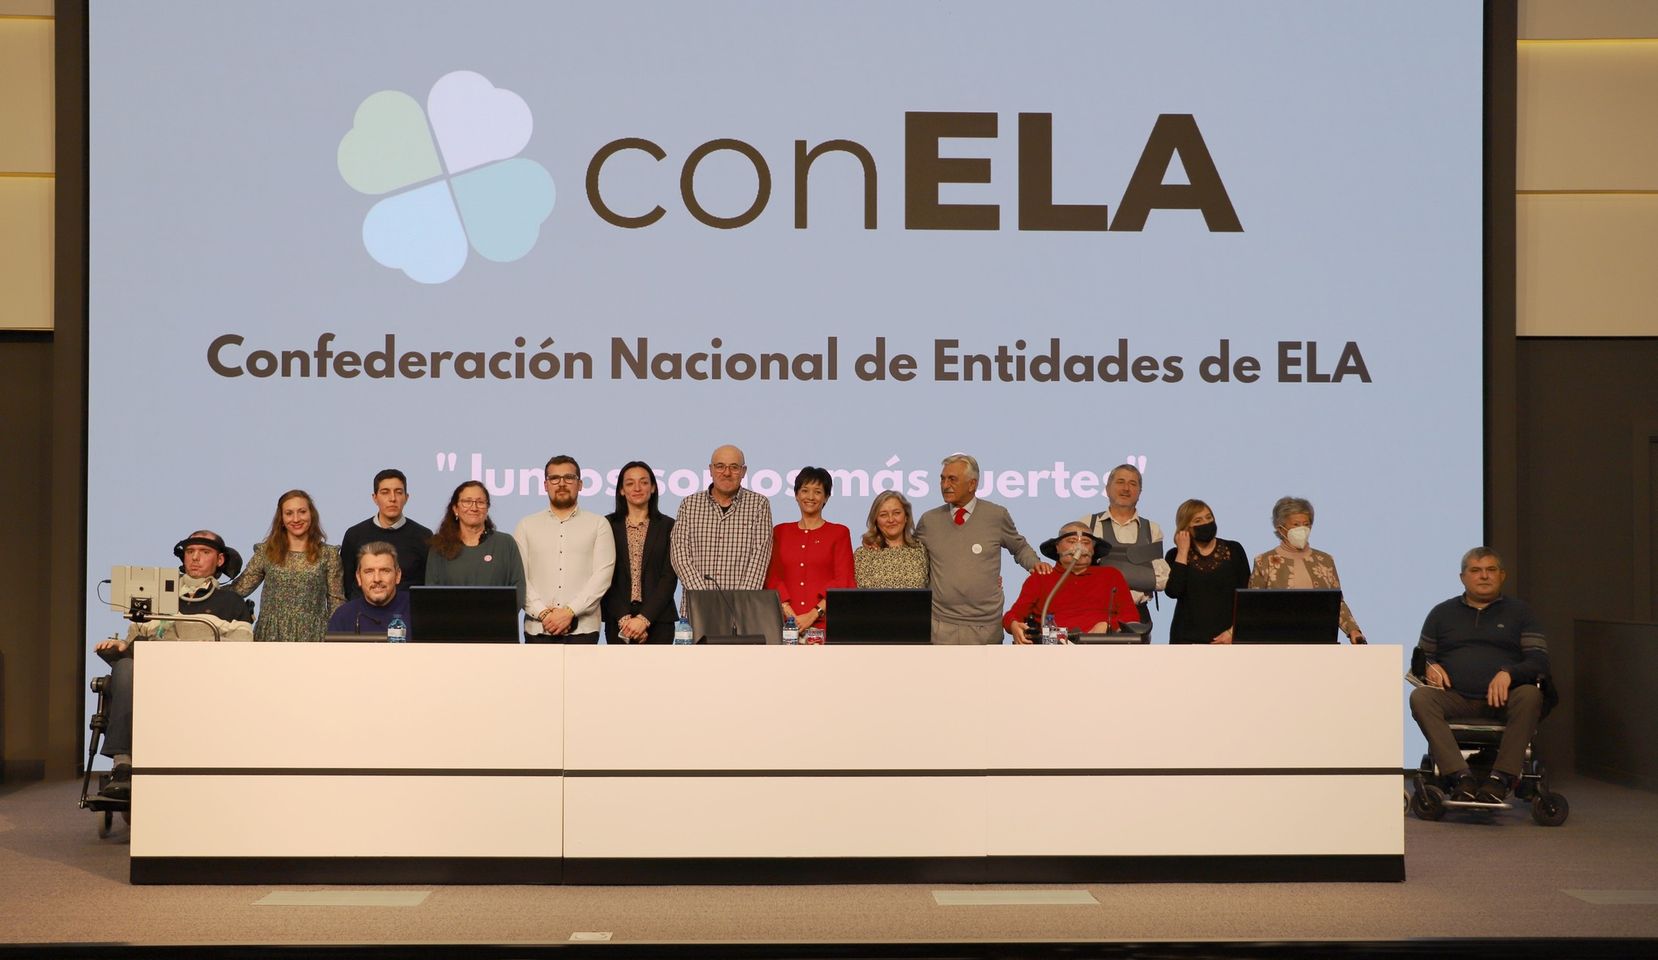 Nace  CON ELA Confederación Nacional de Entidades de ELA con el objetivo de aunar nuestras voces y esfuerzos para defender los derechos de las personas afectadas por esta enfermedad.